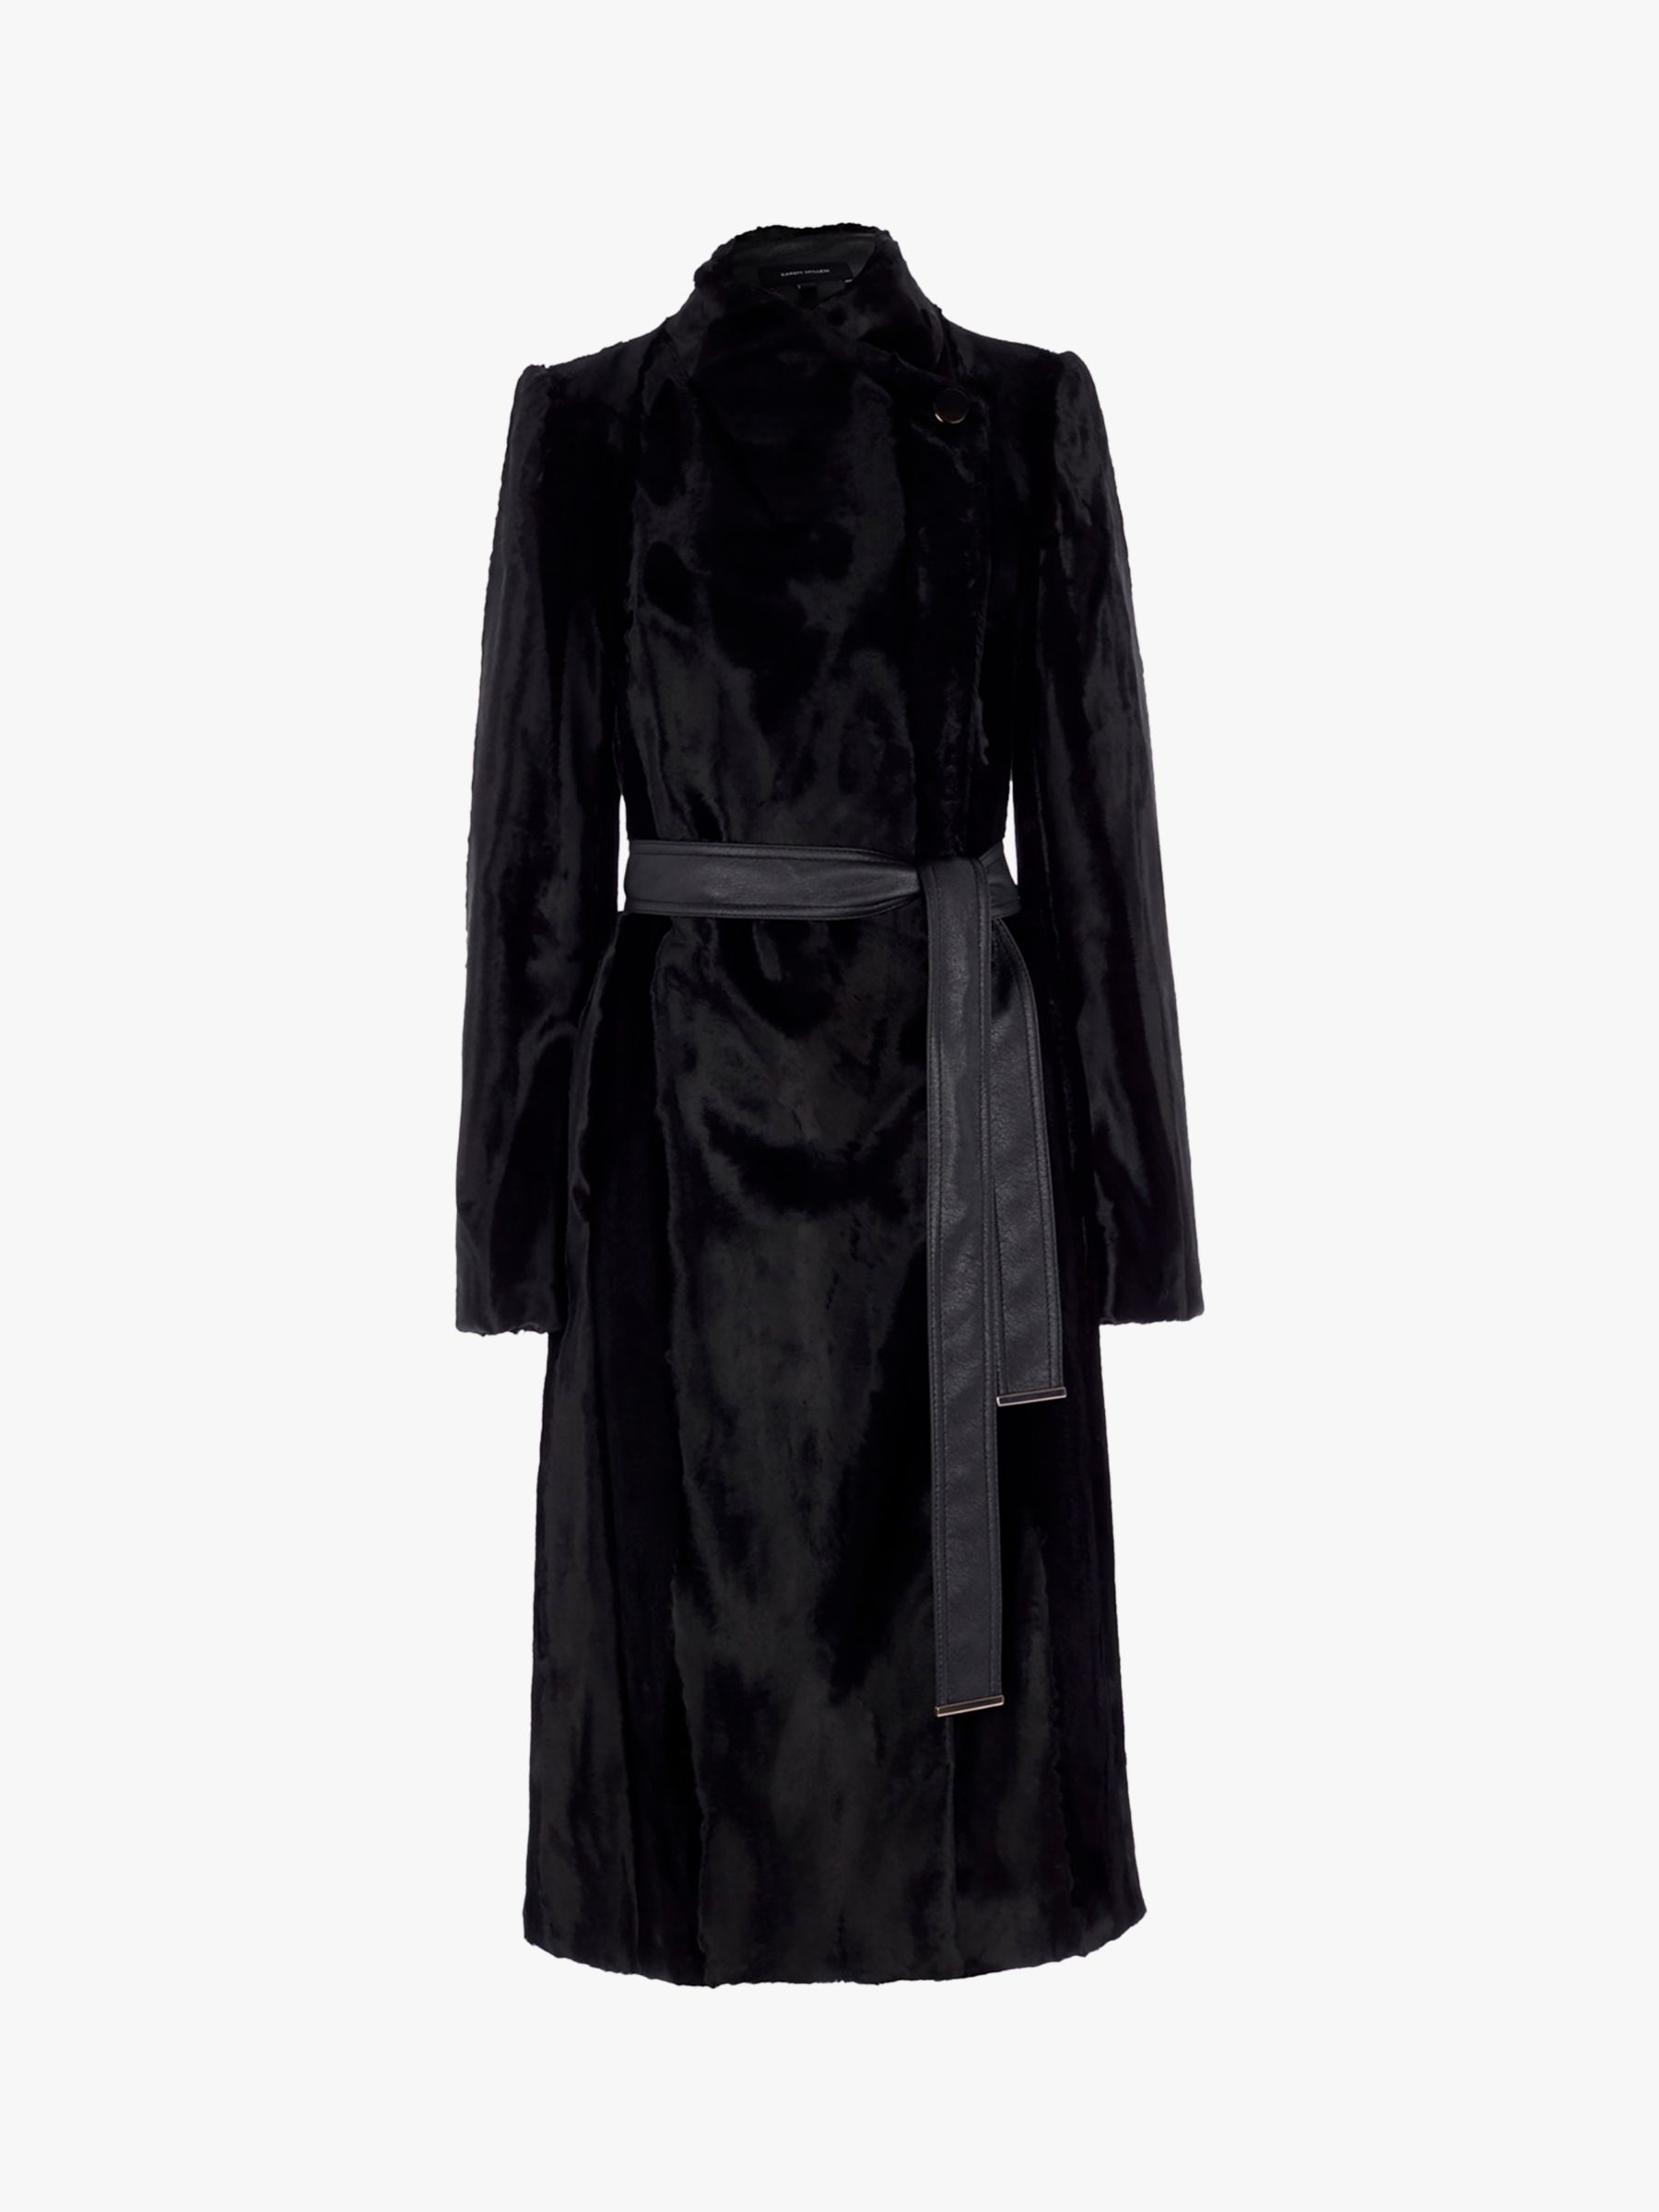 Karen Millen Textured Faux Ponytail Longline Coat, Black, 6